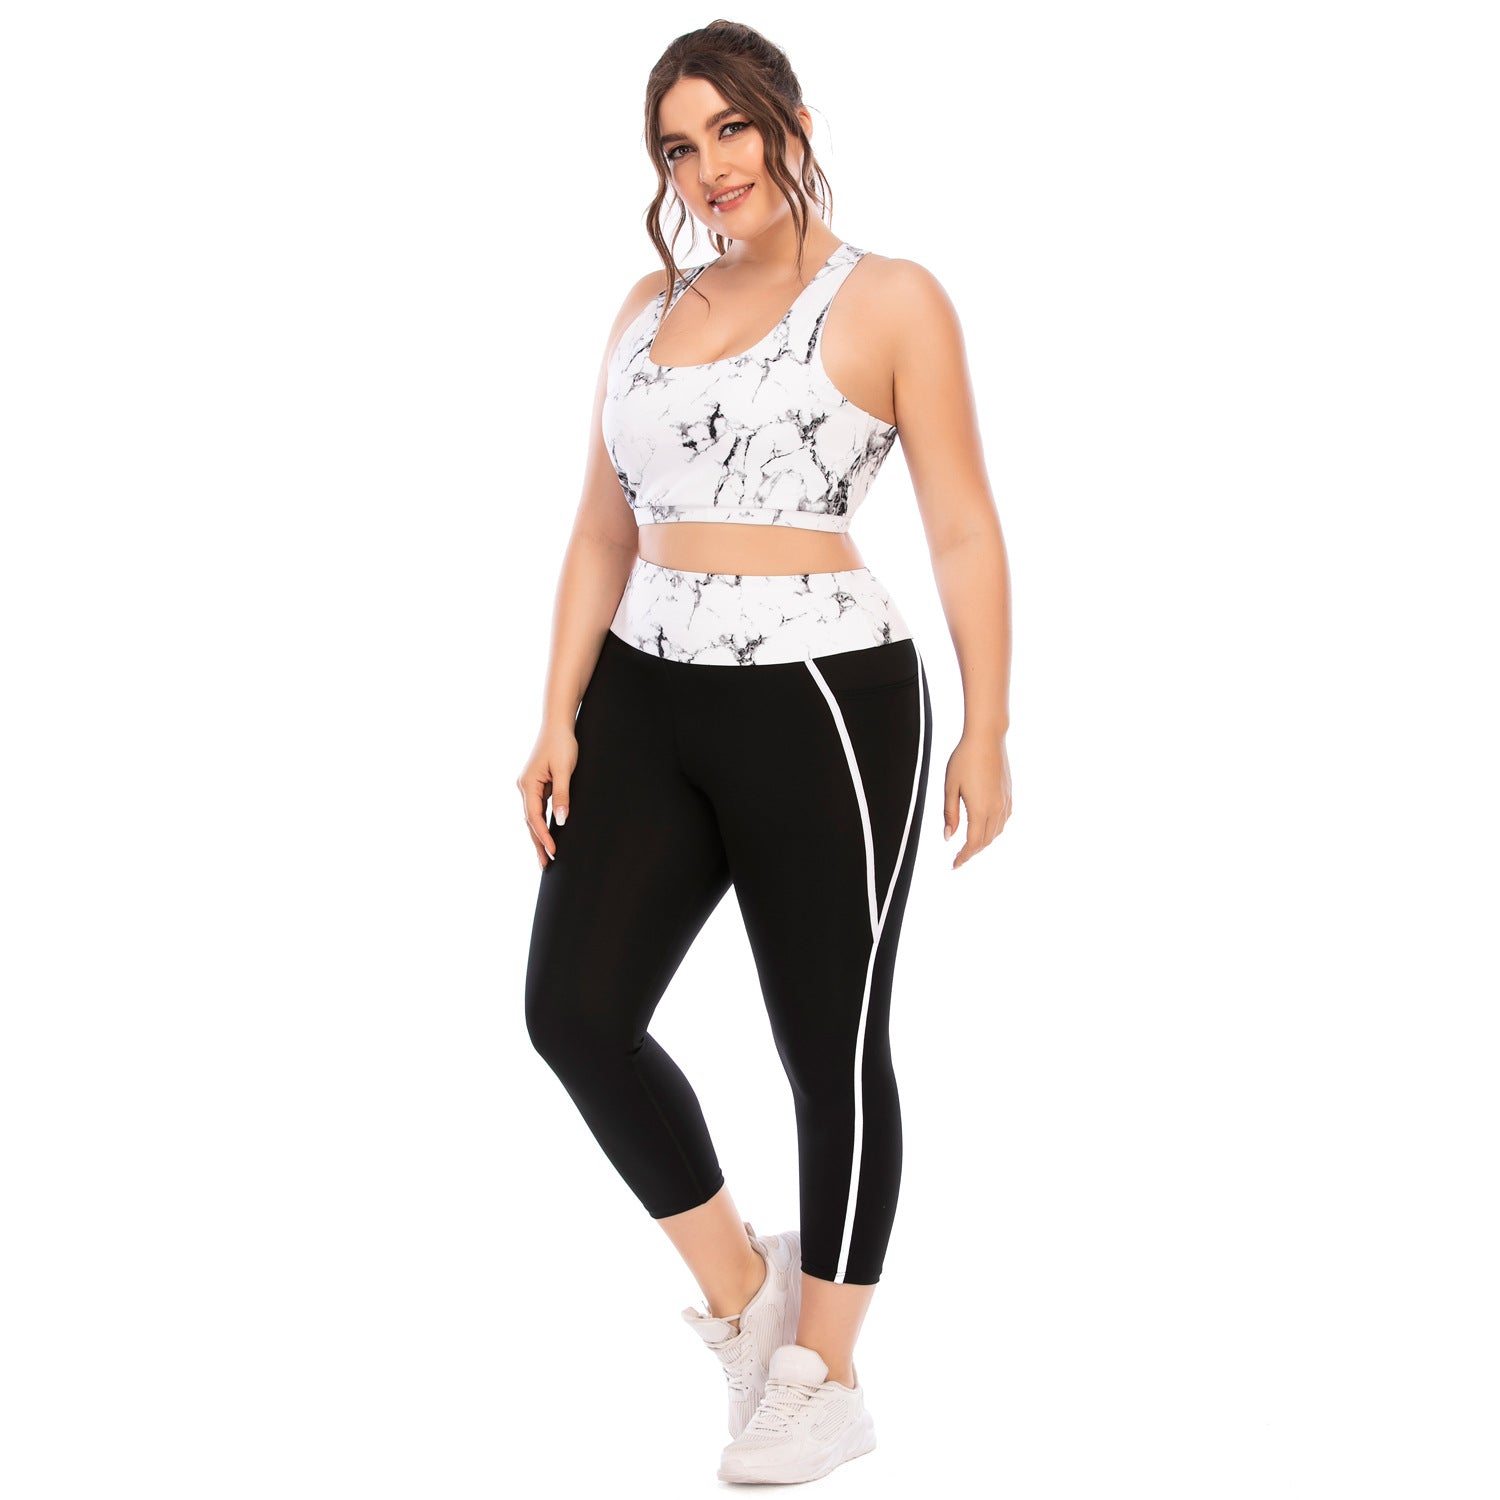 Workout Clothing Suit Plus Size Yoga Clothing Leggings - ladieskits